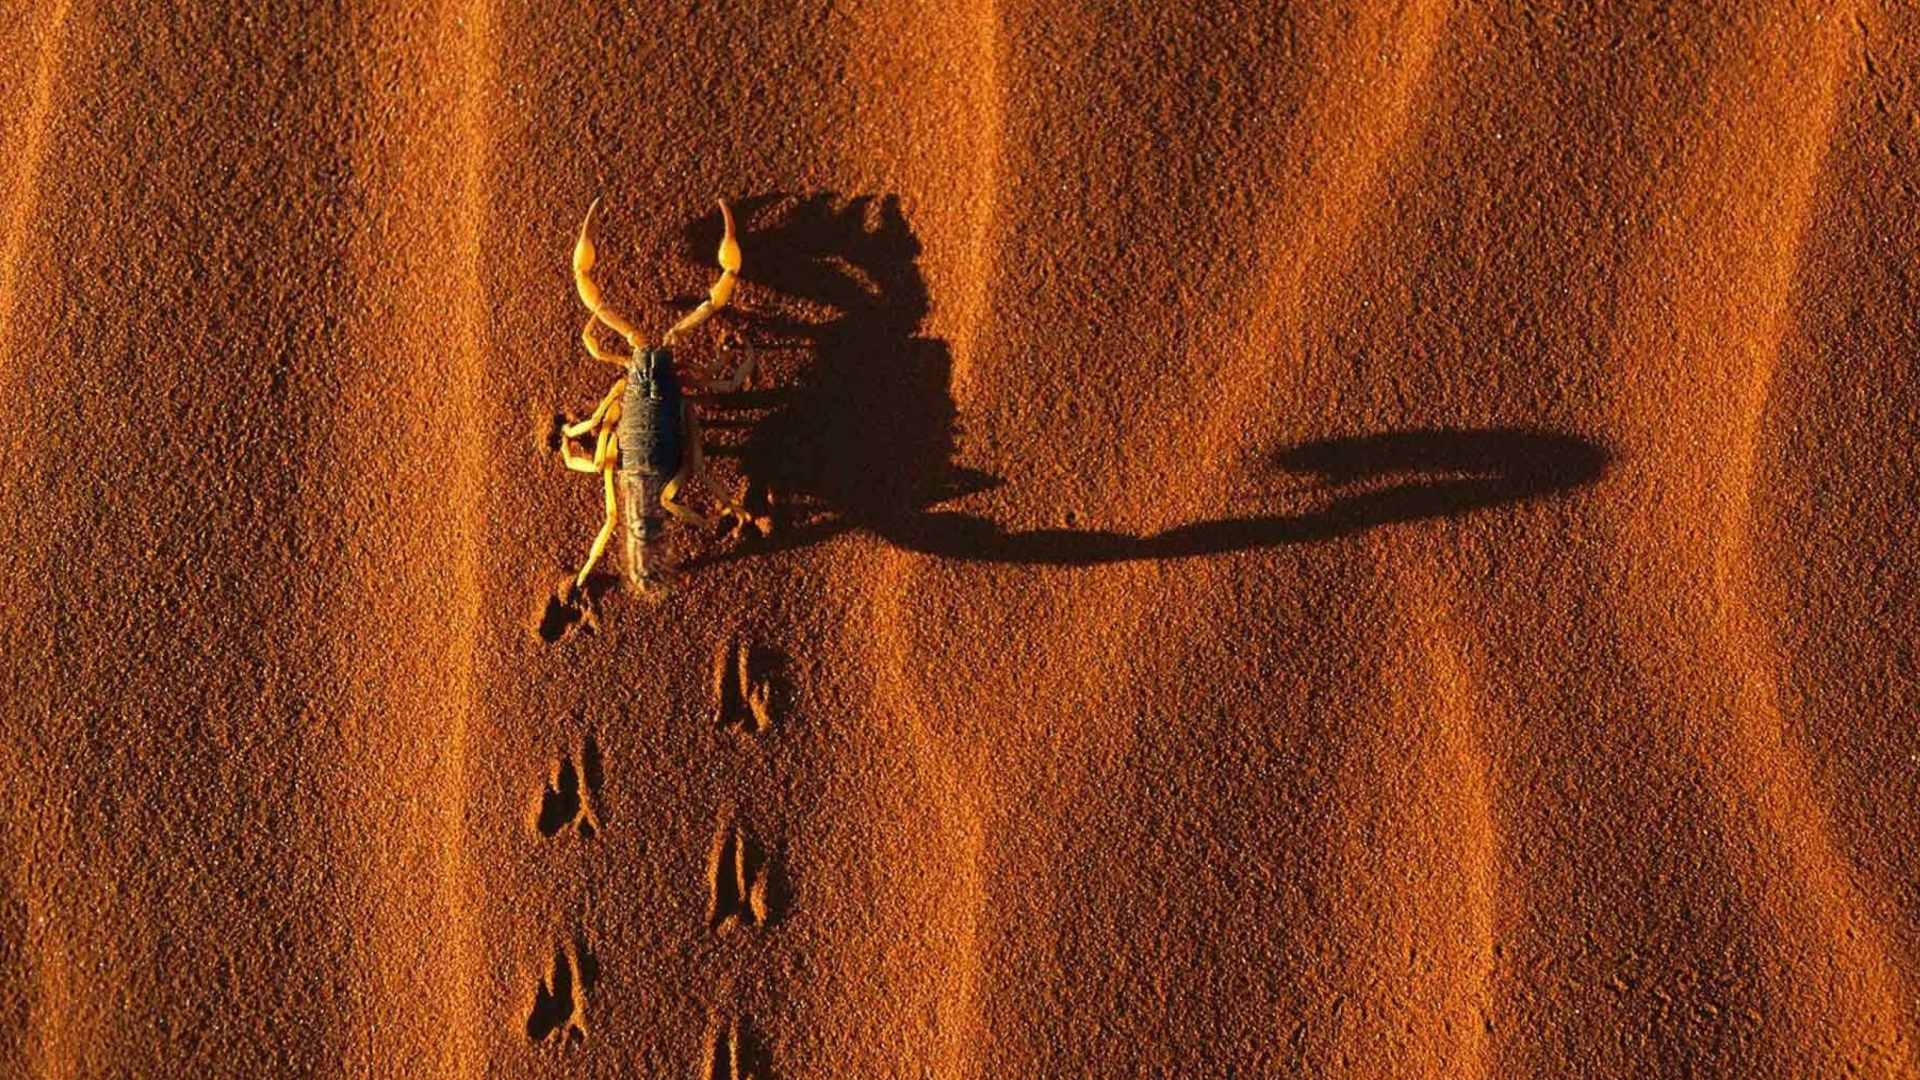 Sfondi Scorpion On Sand 1920x1080